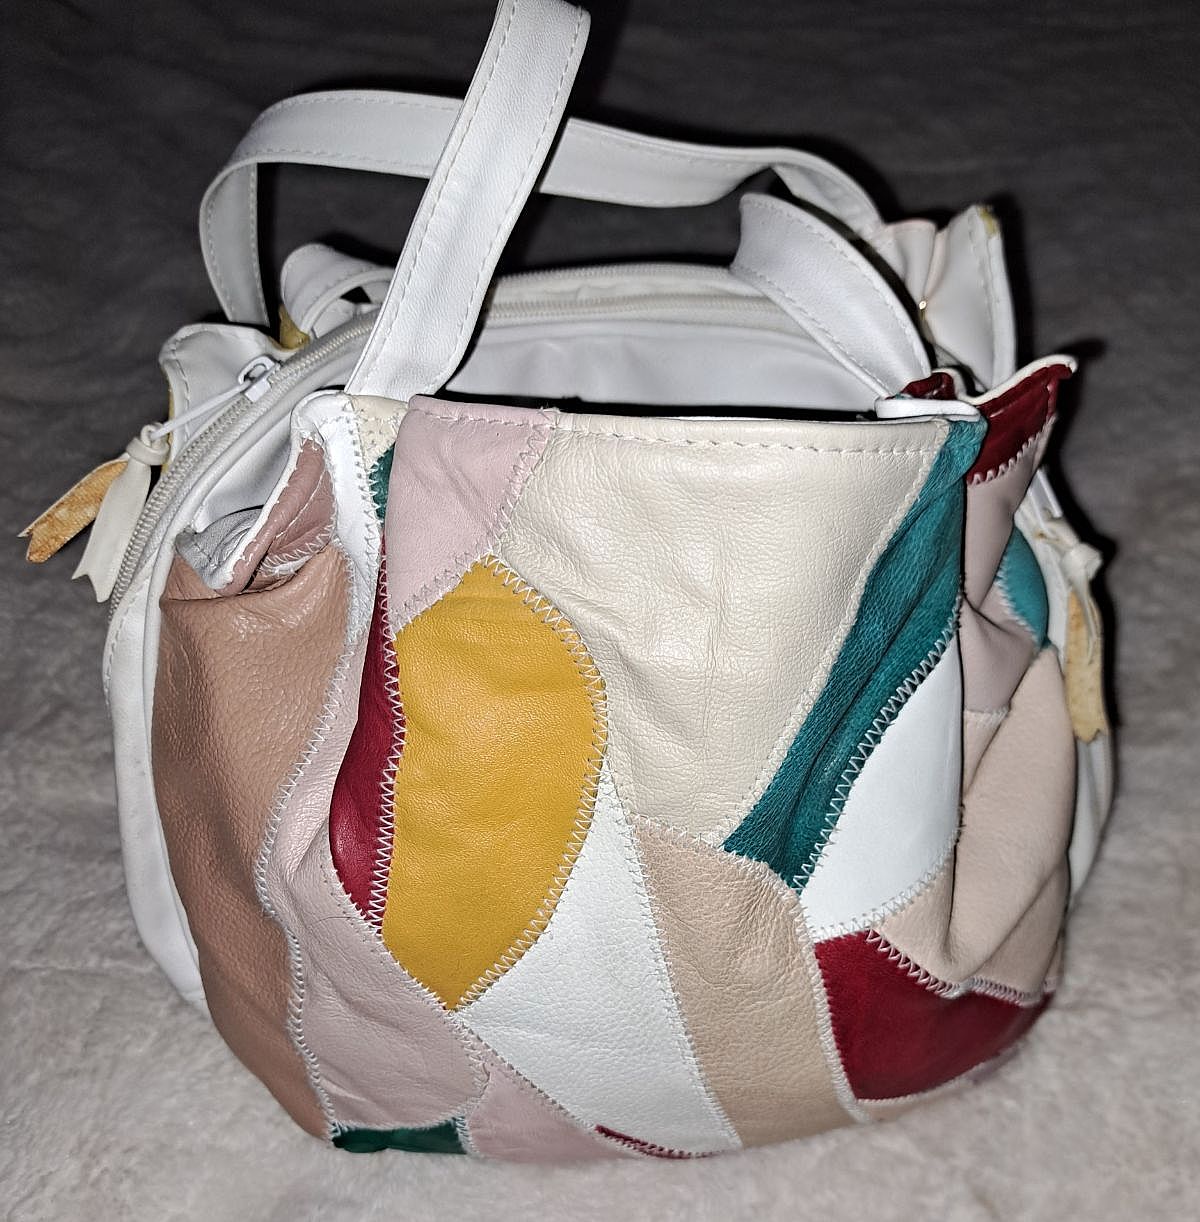 SHE-BANG Shop | Unique Handbags | Sustainable + Handmade – She-bang Shop